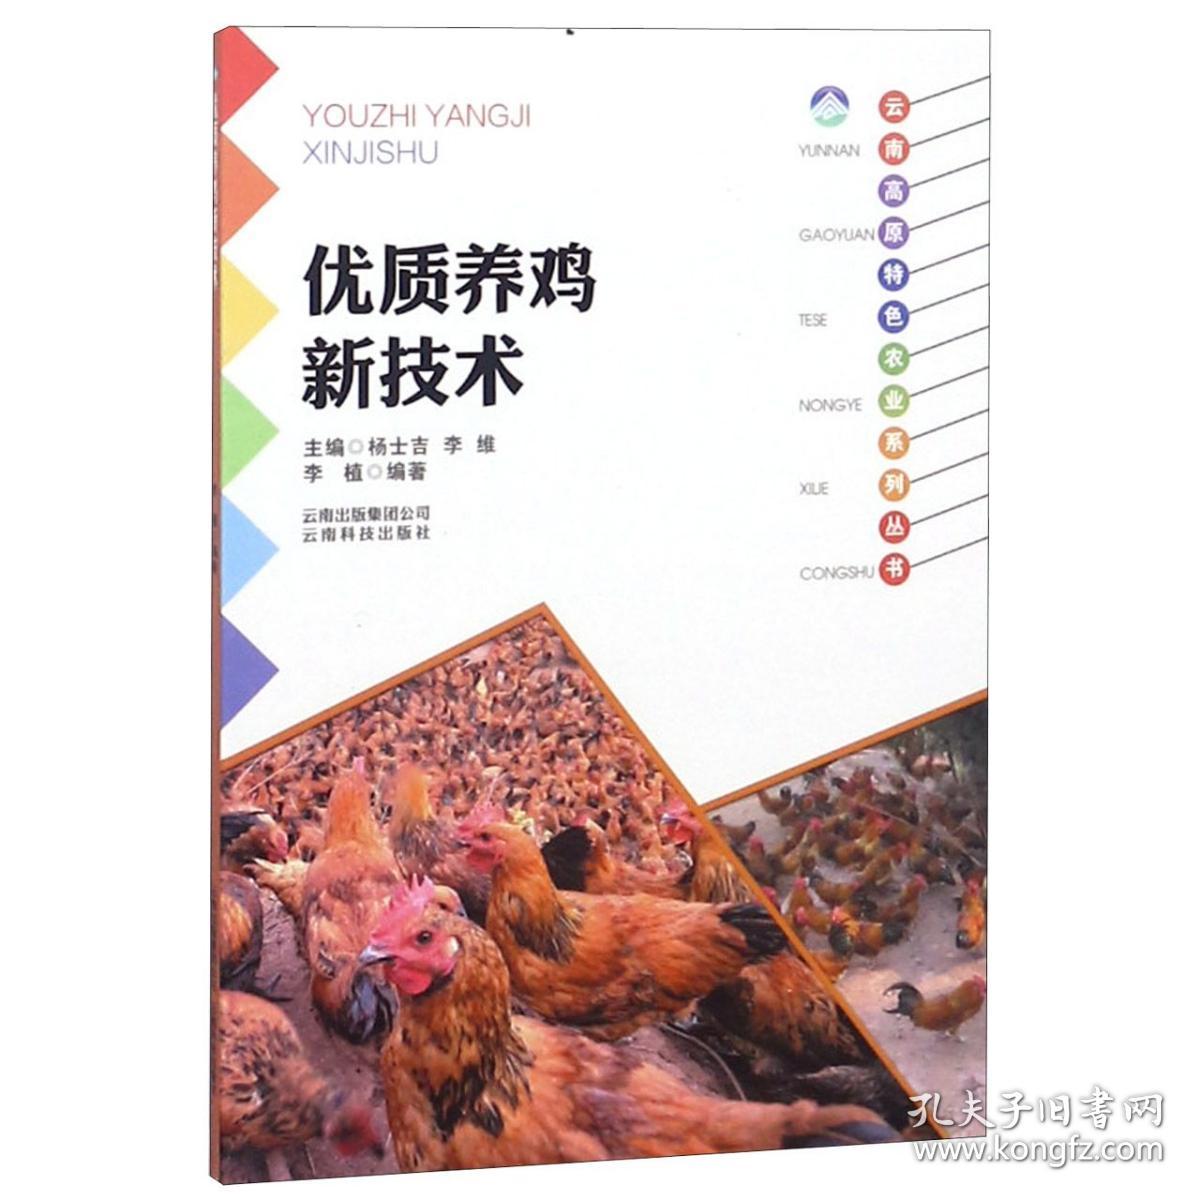 优质养鸡新技术/云南高原特色农业系列丛书 9787541687075